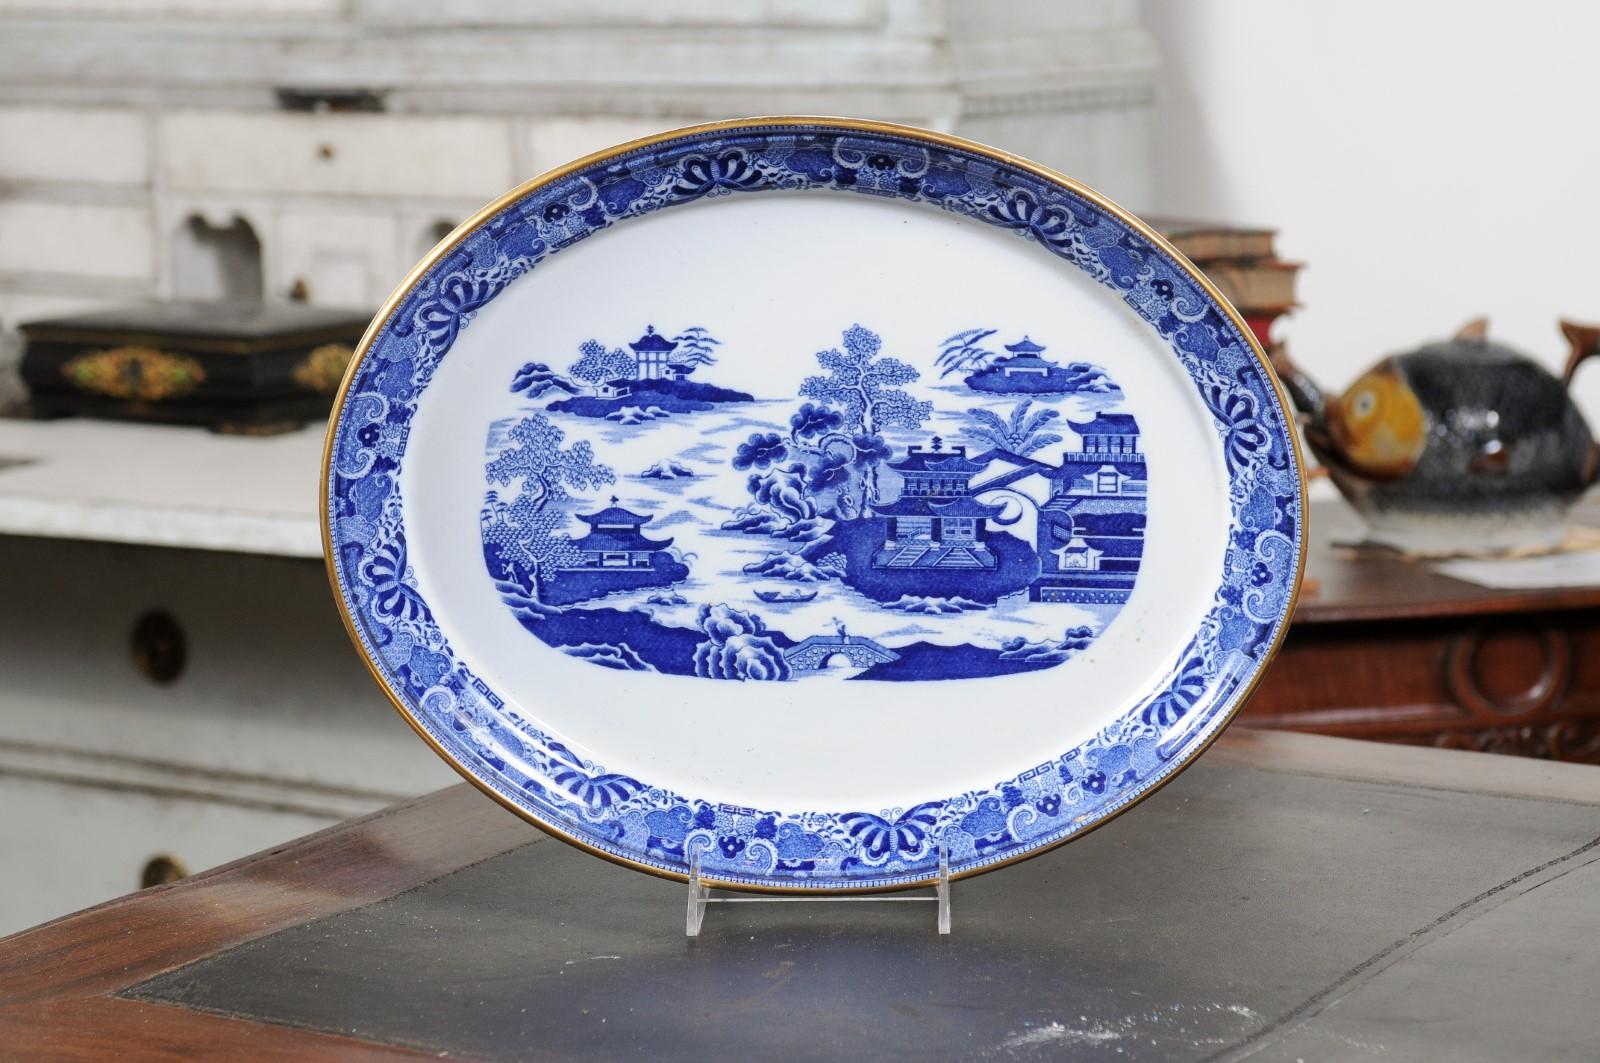 Englischer ovaler Porzellanteller in Blau und Weiß aus dem 19. Jahrhundert mit Chinoiserie-Motiven. Dieser Porzellanteller wurde im 19. Jahrhundert in England hergestellt und zeichnet sich durch einen weißen Grund aus, der durch ein